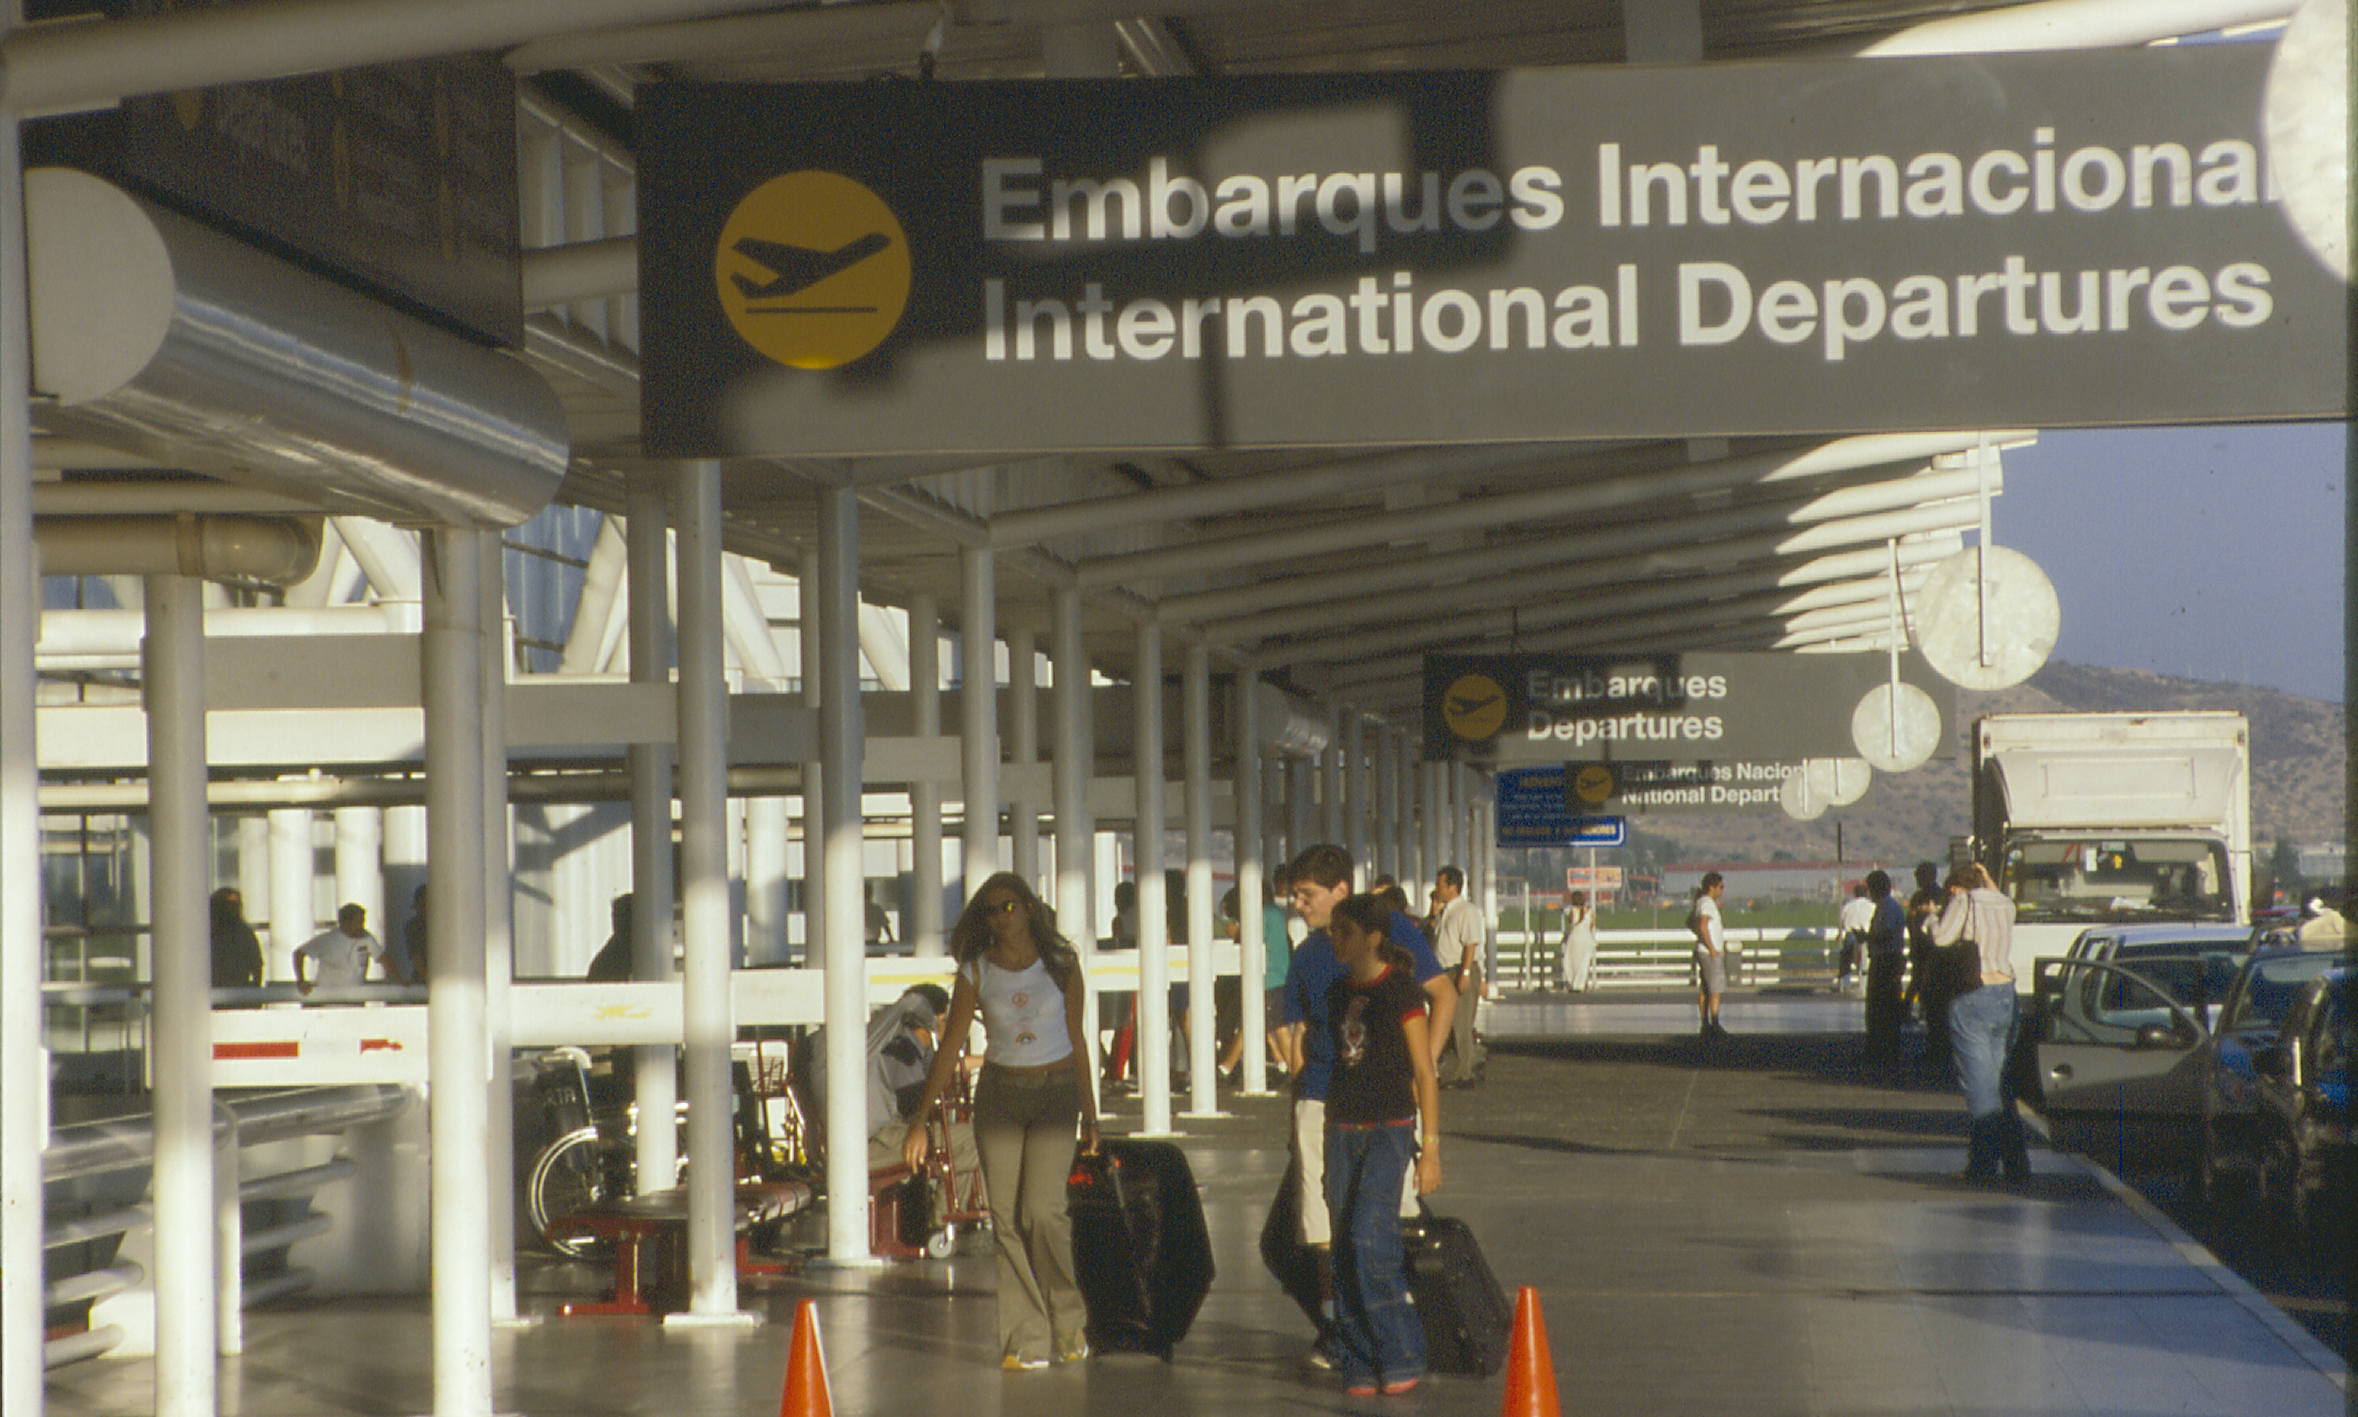 Aeropuerto de Chile embarque internacional